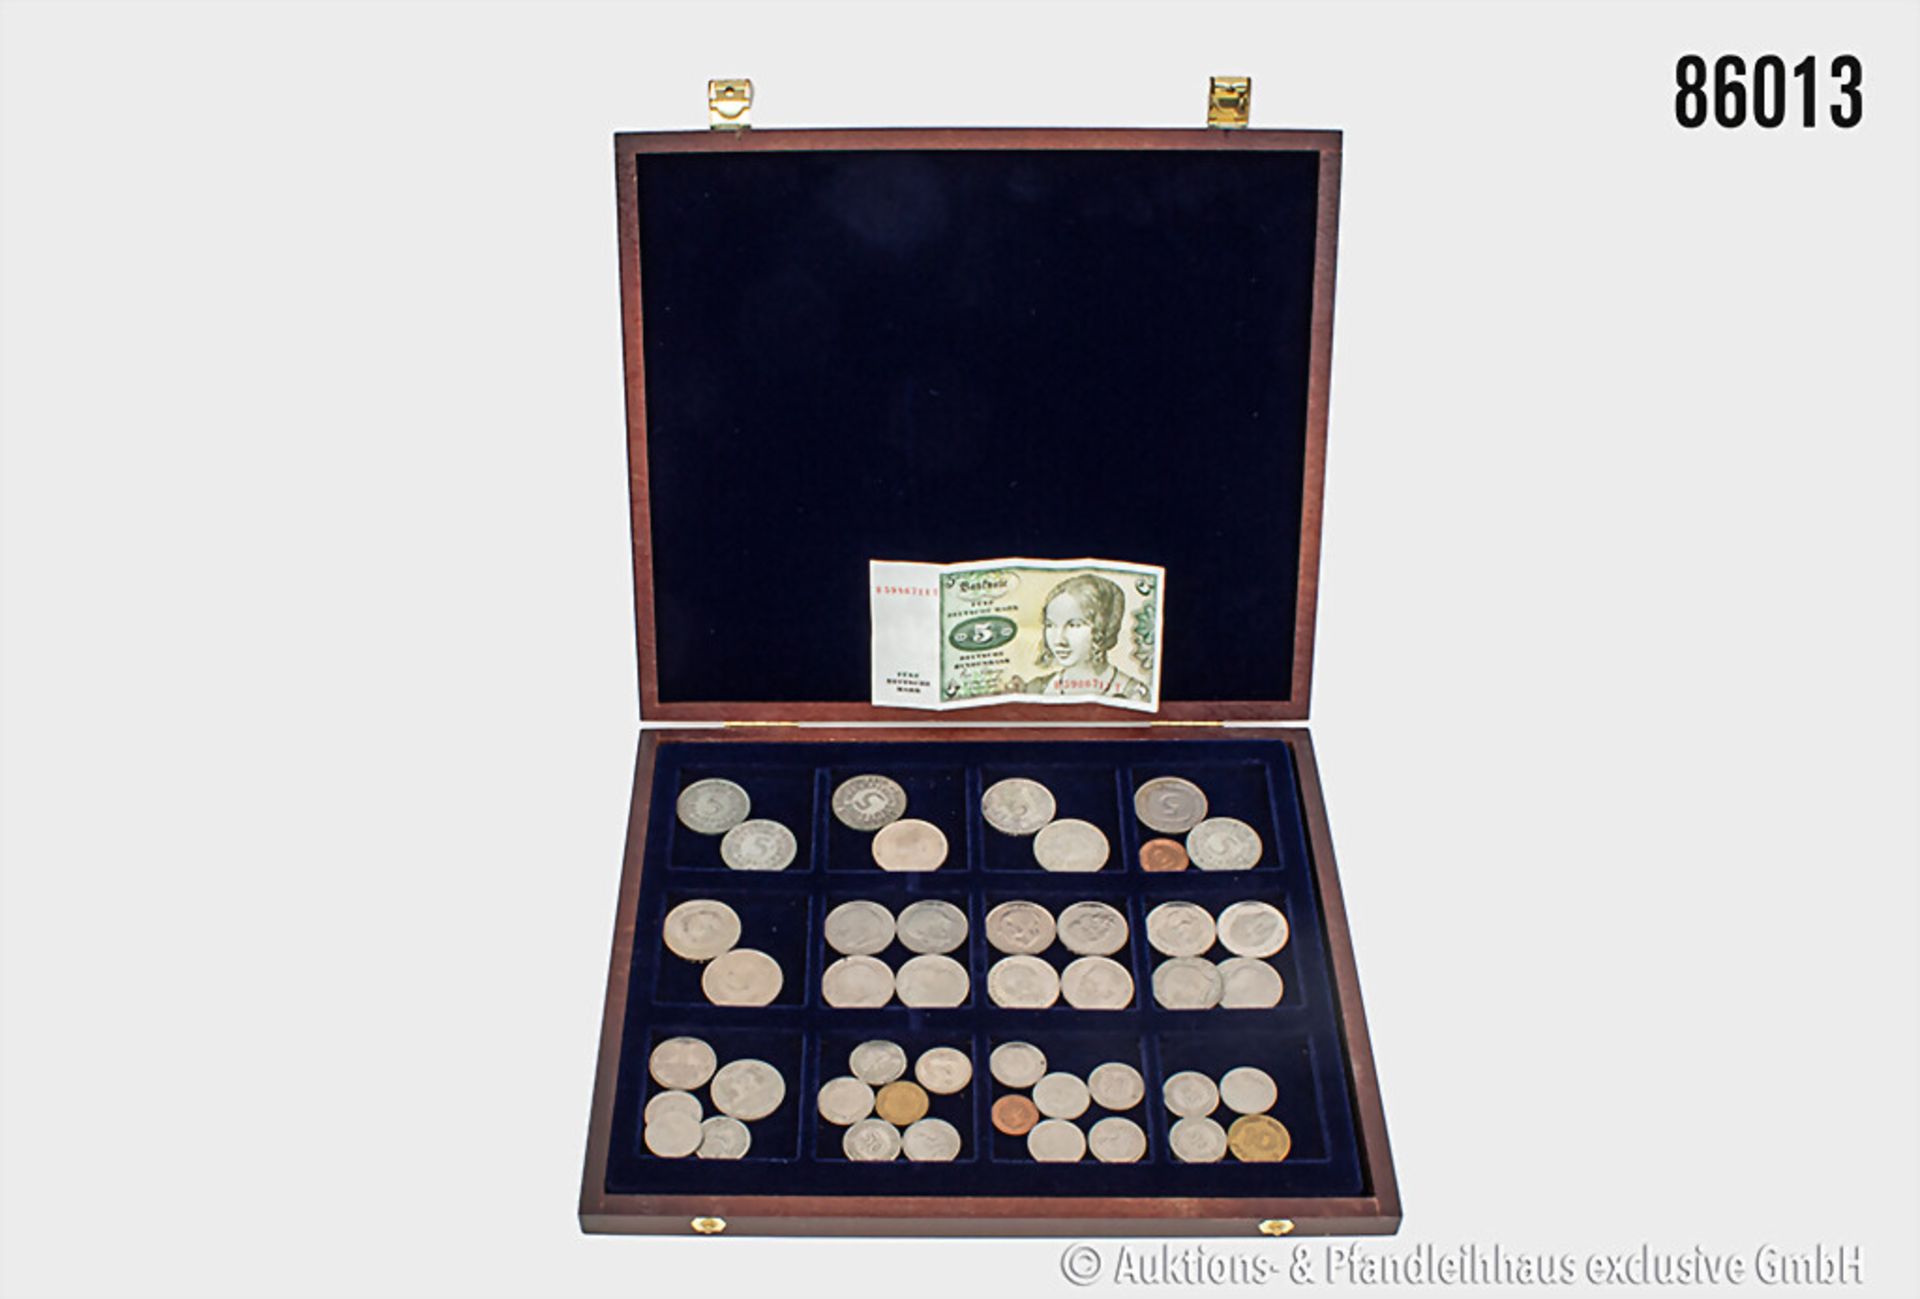 Konv. DM Münzen von 1 Pf. bis 5 DM, insgesamt ca. 85,- DM in Münzen sowie 1 x 5 DM ...